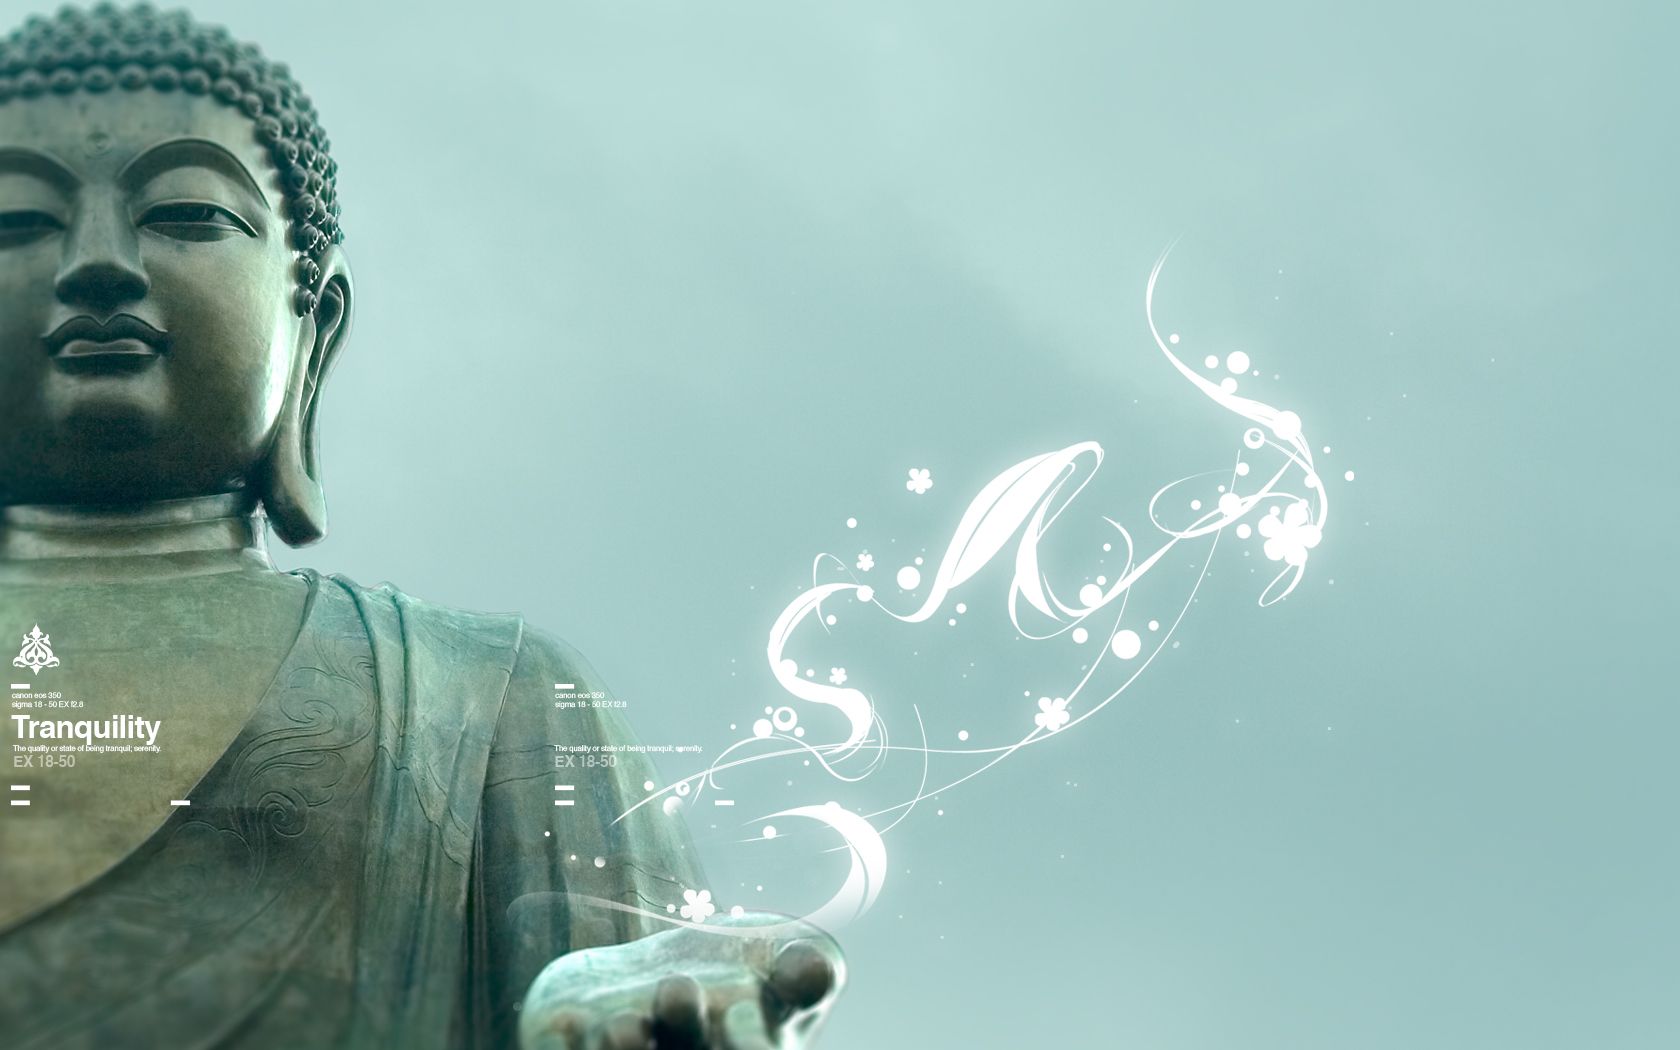  Buddha Hintergrundbild 1680x1050. Laden Sie Das Buddhismus Hintergrundbild Für Ihr Handy In Hochwertigen, Hintergrundbildern Buddhismus Kostenlos Herunter